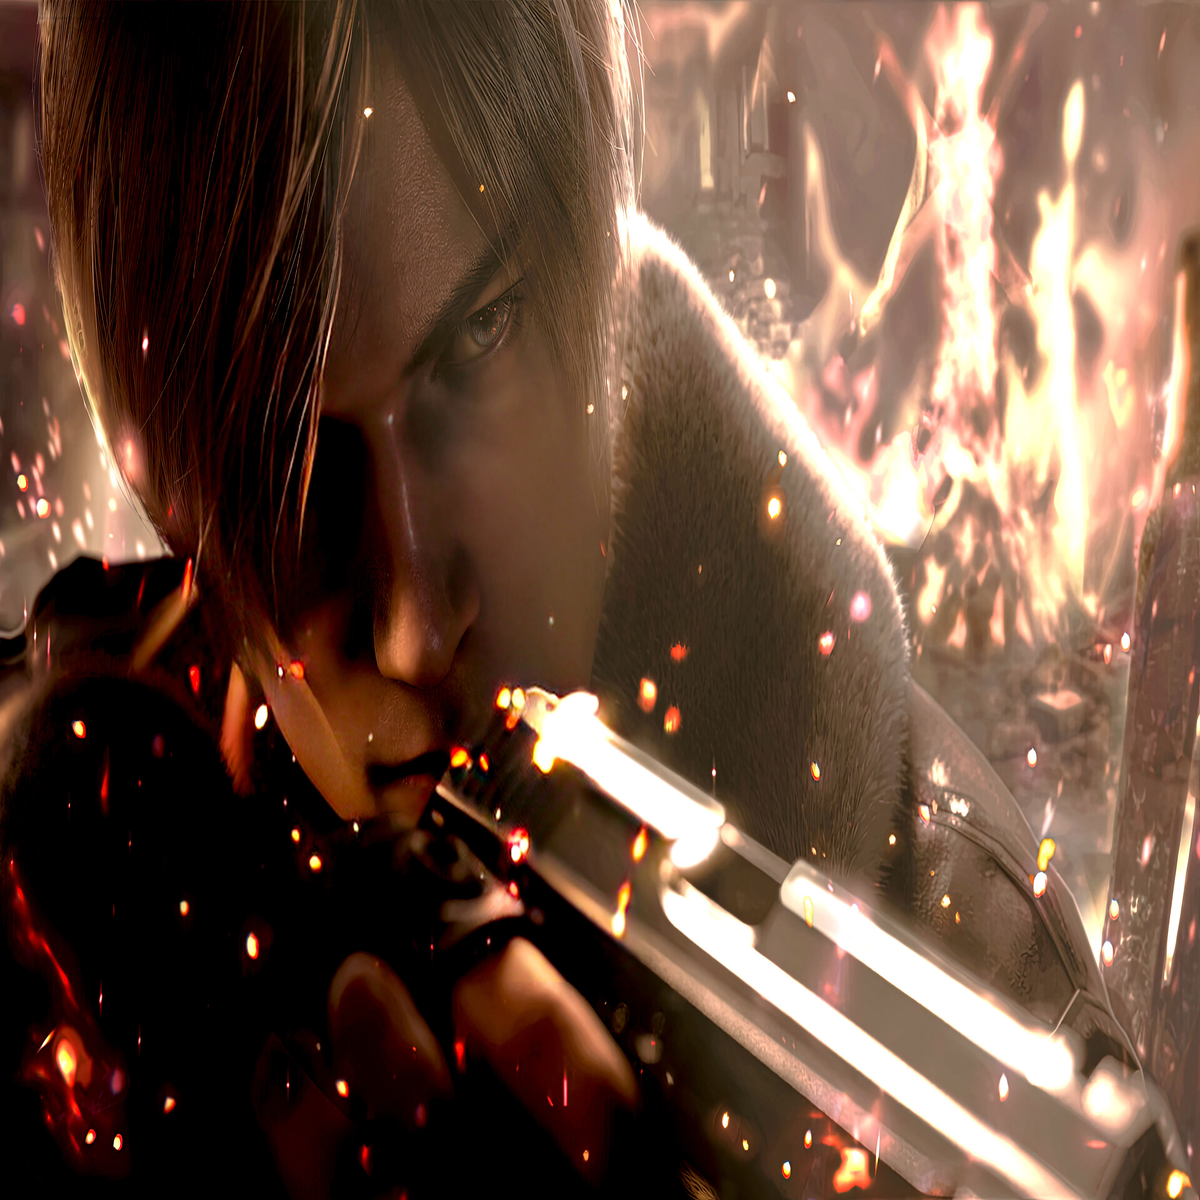 Resident Evil 4 Remake Xbox